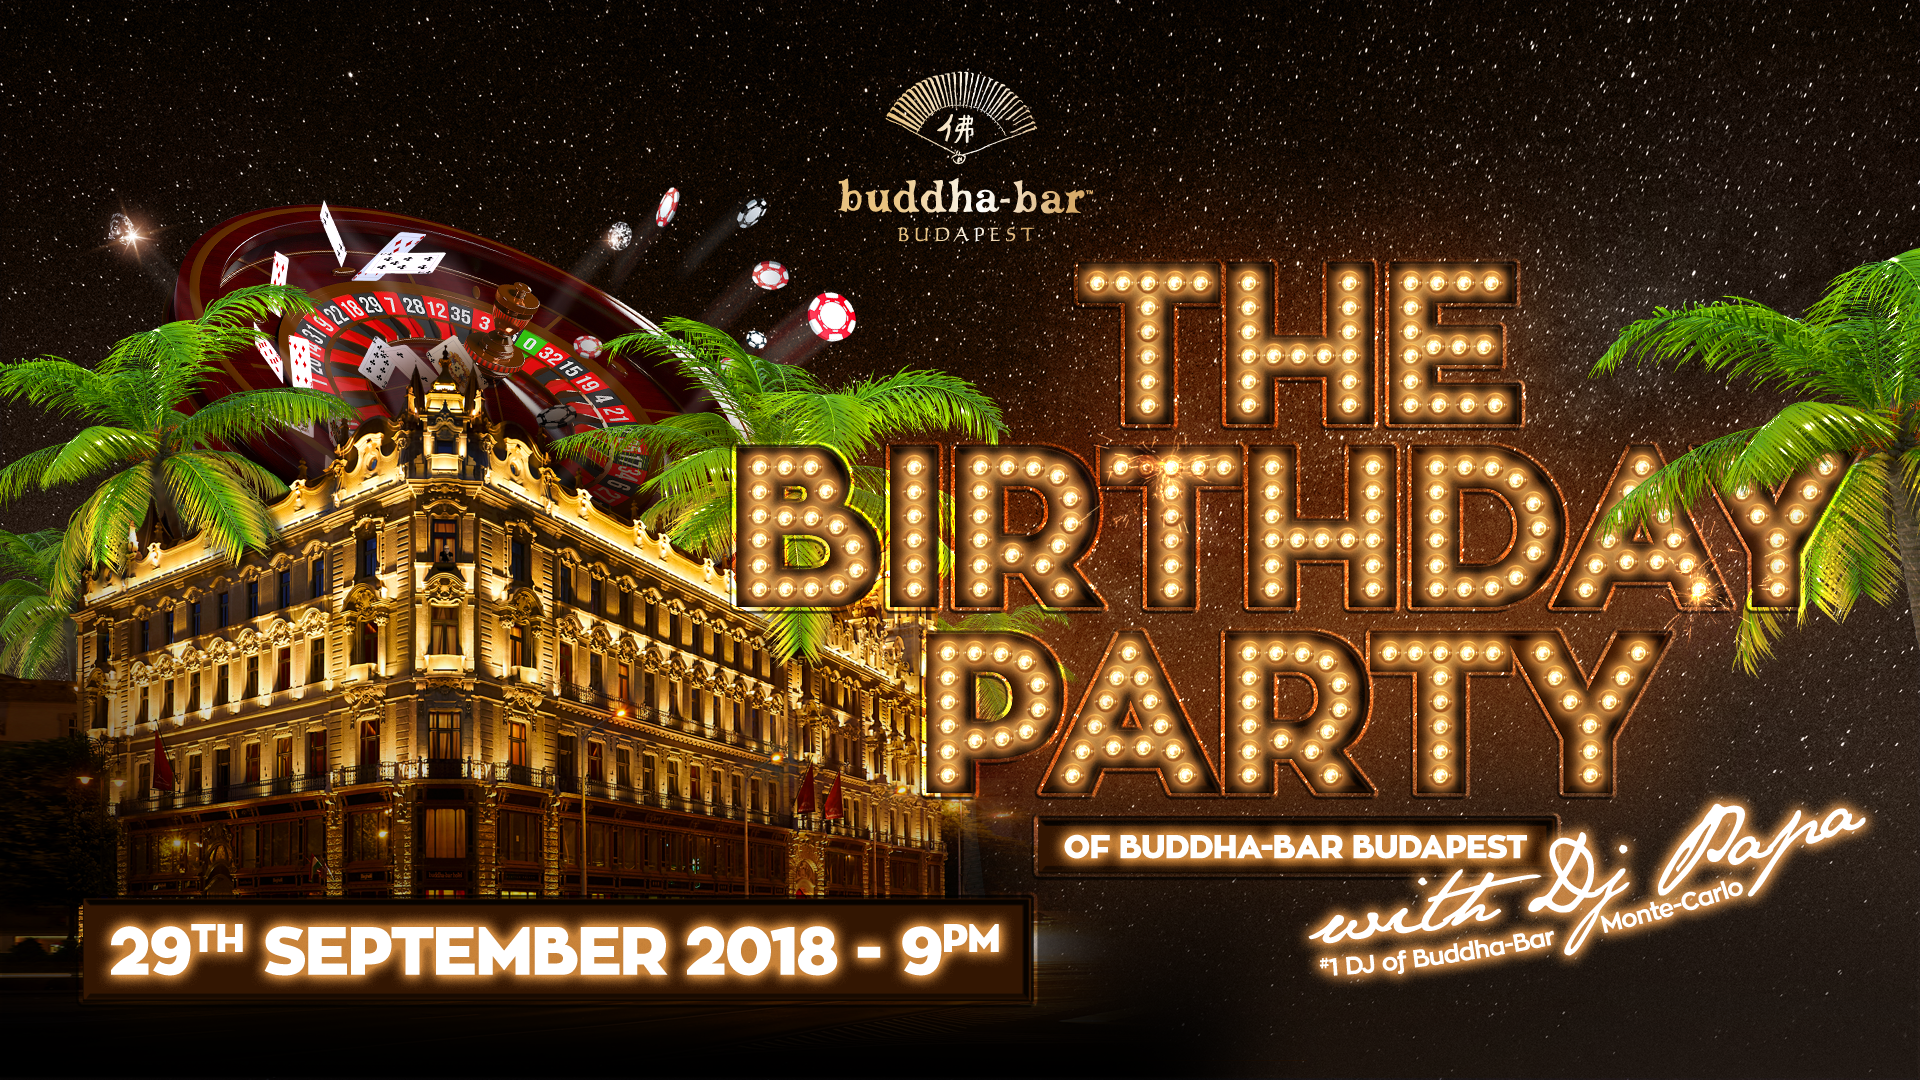 Buddha-Bar Budapest Birthday Party, 29 September